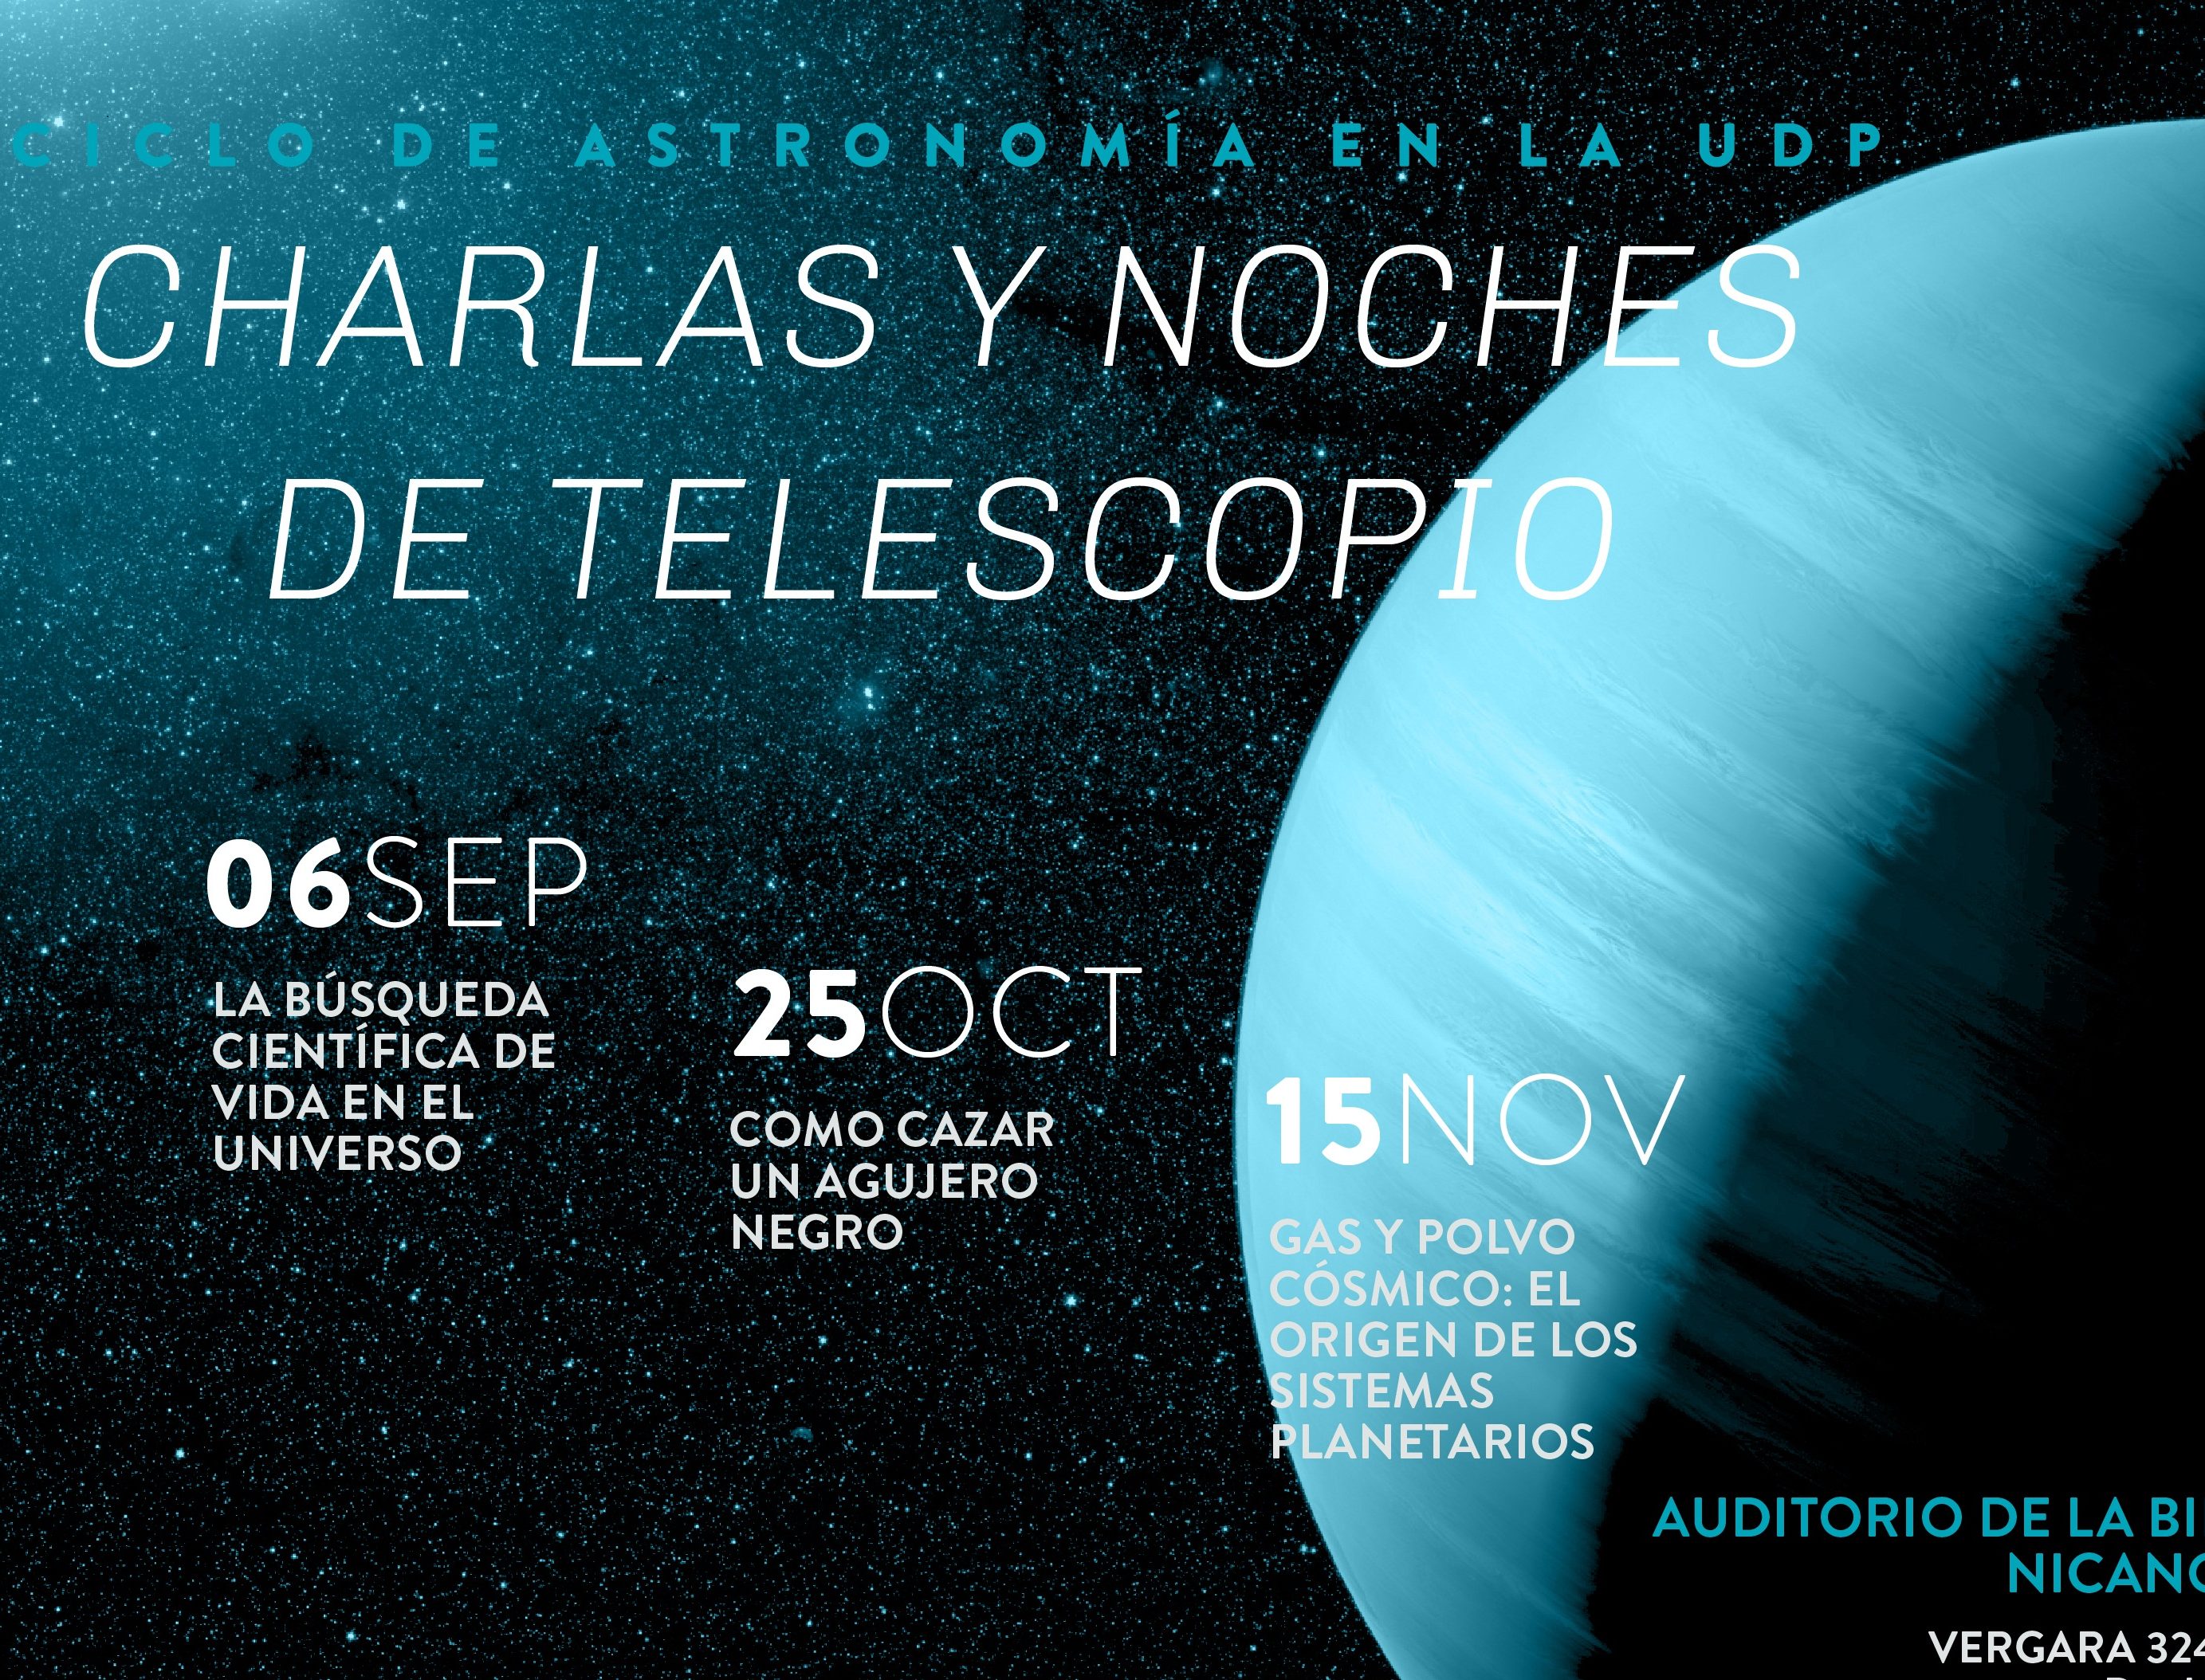 (Español) Regresa el Ciclo de Astronomía UDP con charlas imperdibles